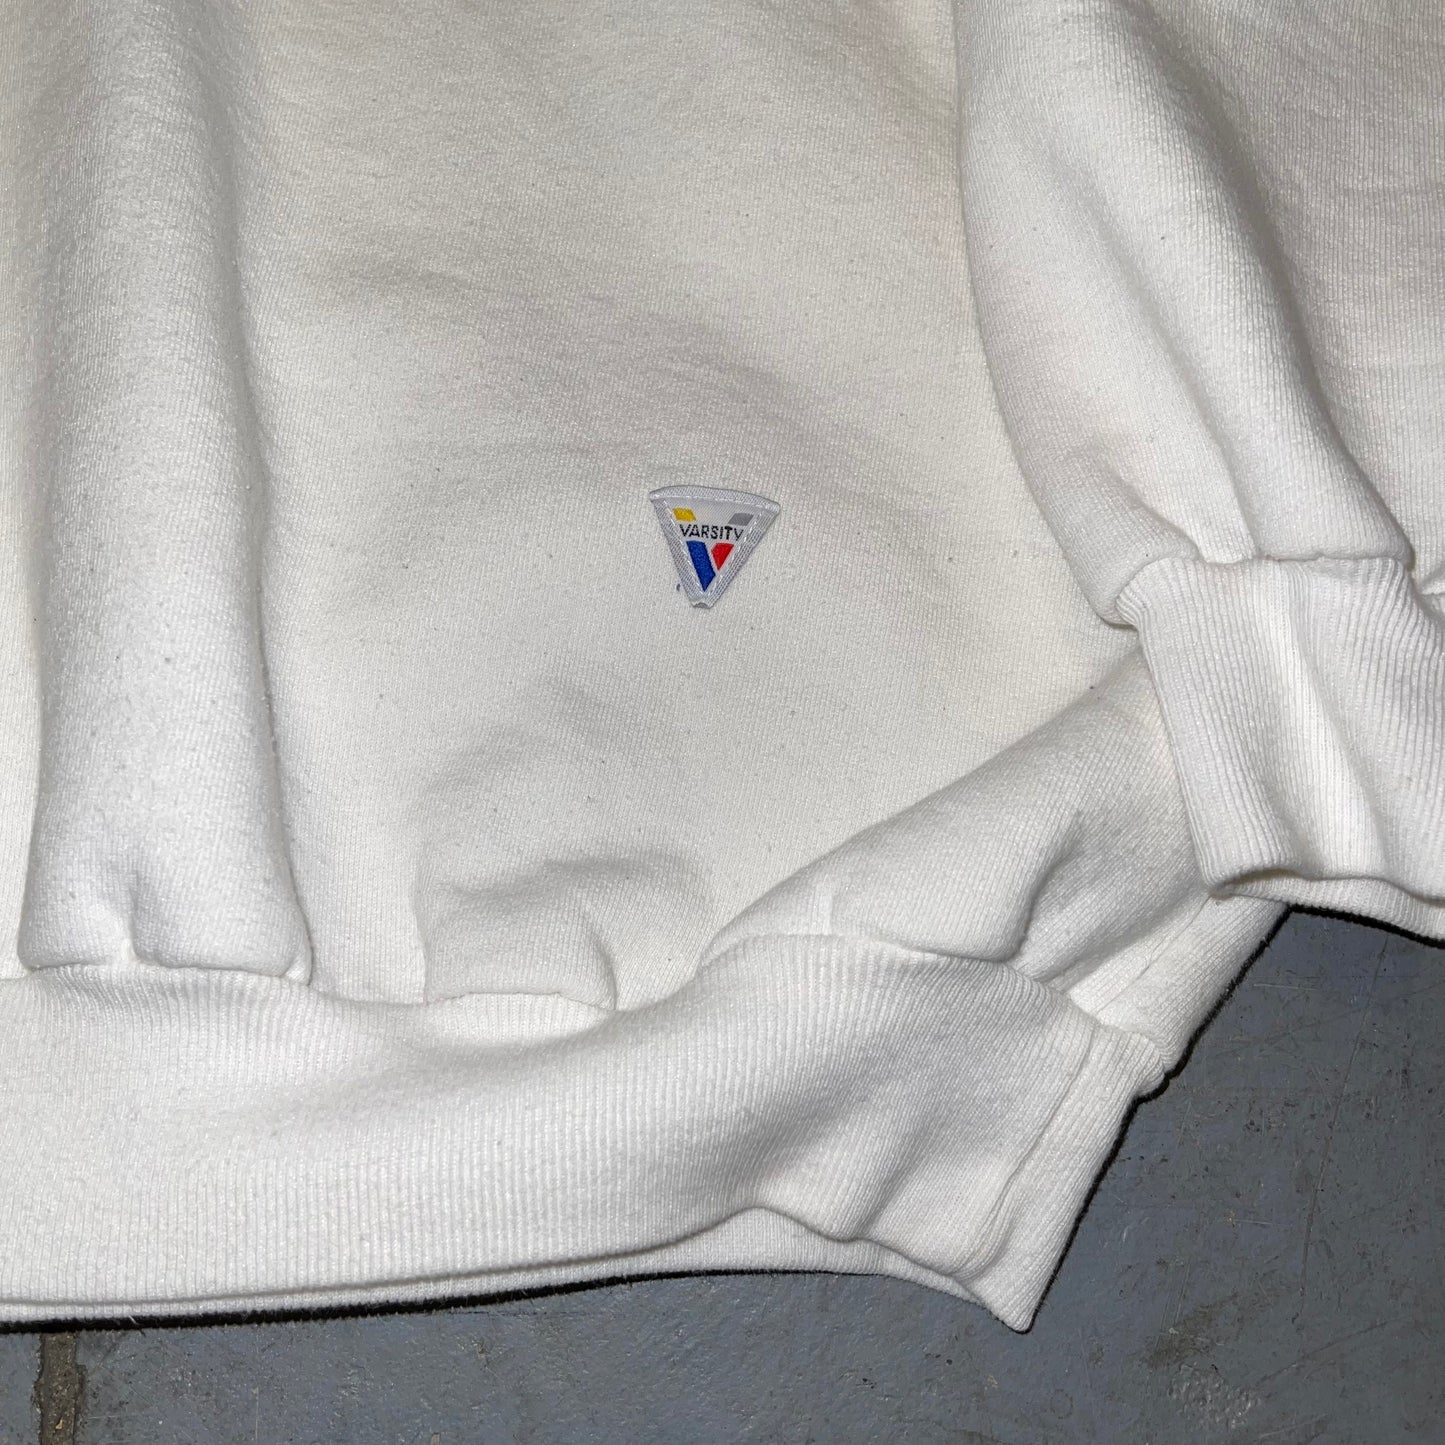 Vintage Varsity Cypress Boosters Sweatshirt. XL